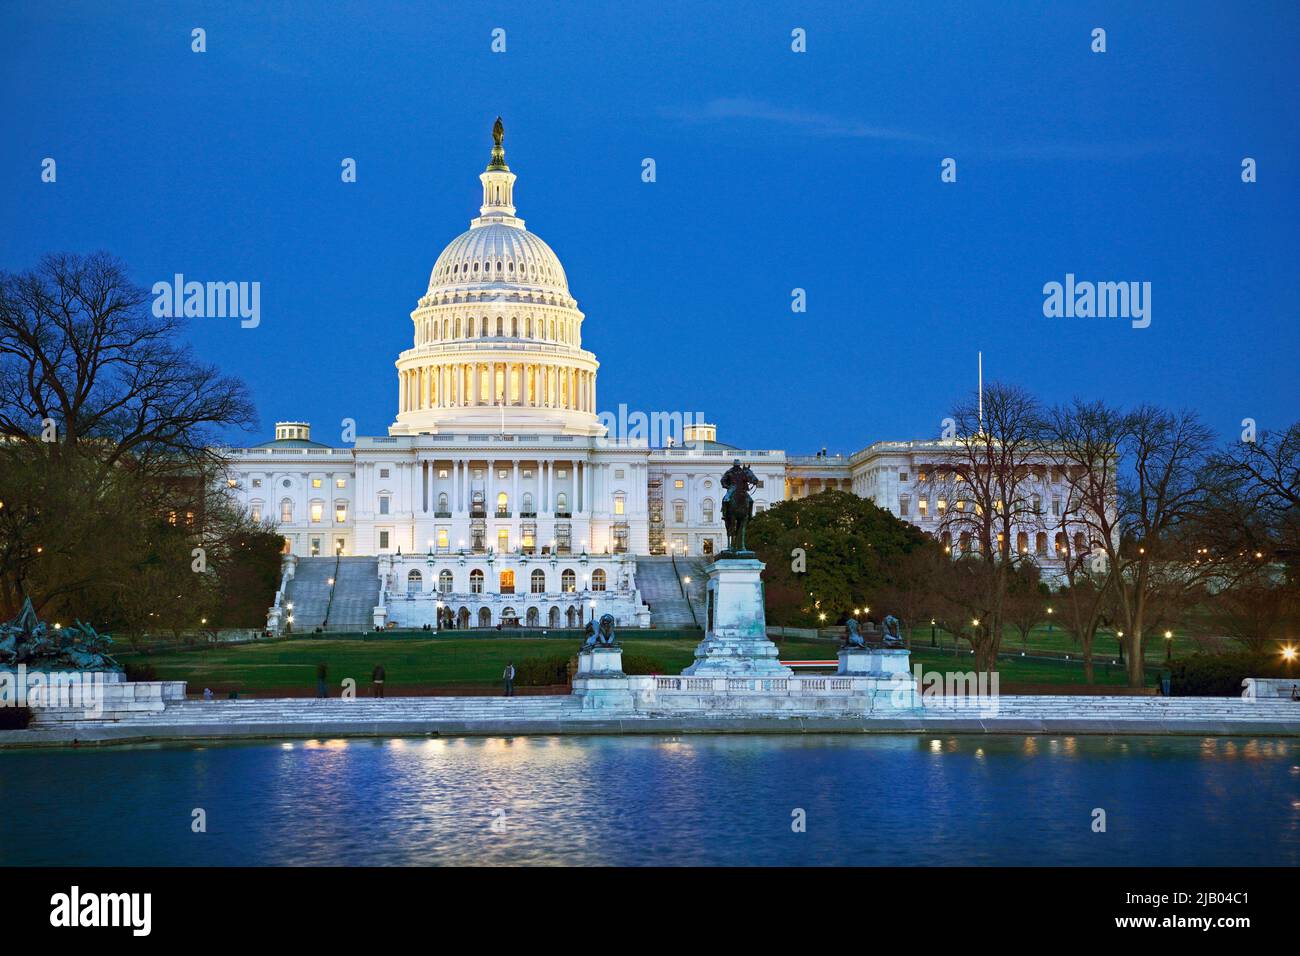 Edificio del Capitolio DE LOS ESTADOS UNIDOS, Washington D.C., al atardecer Foto de stock